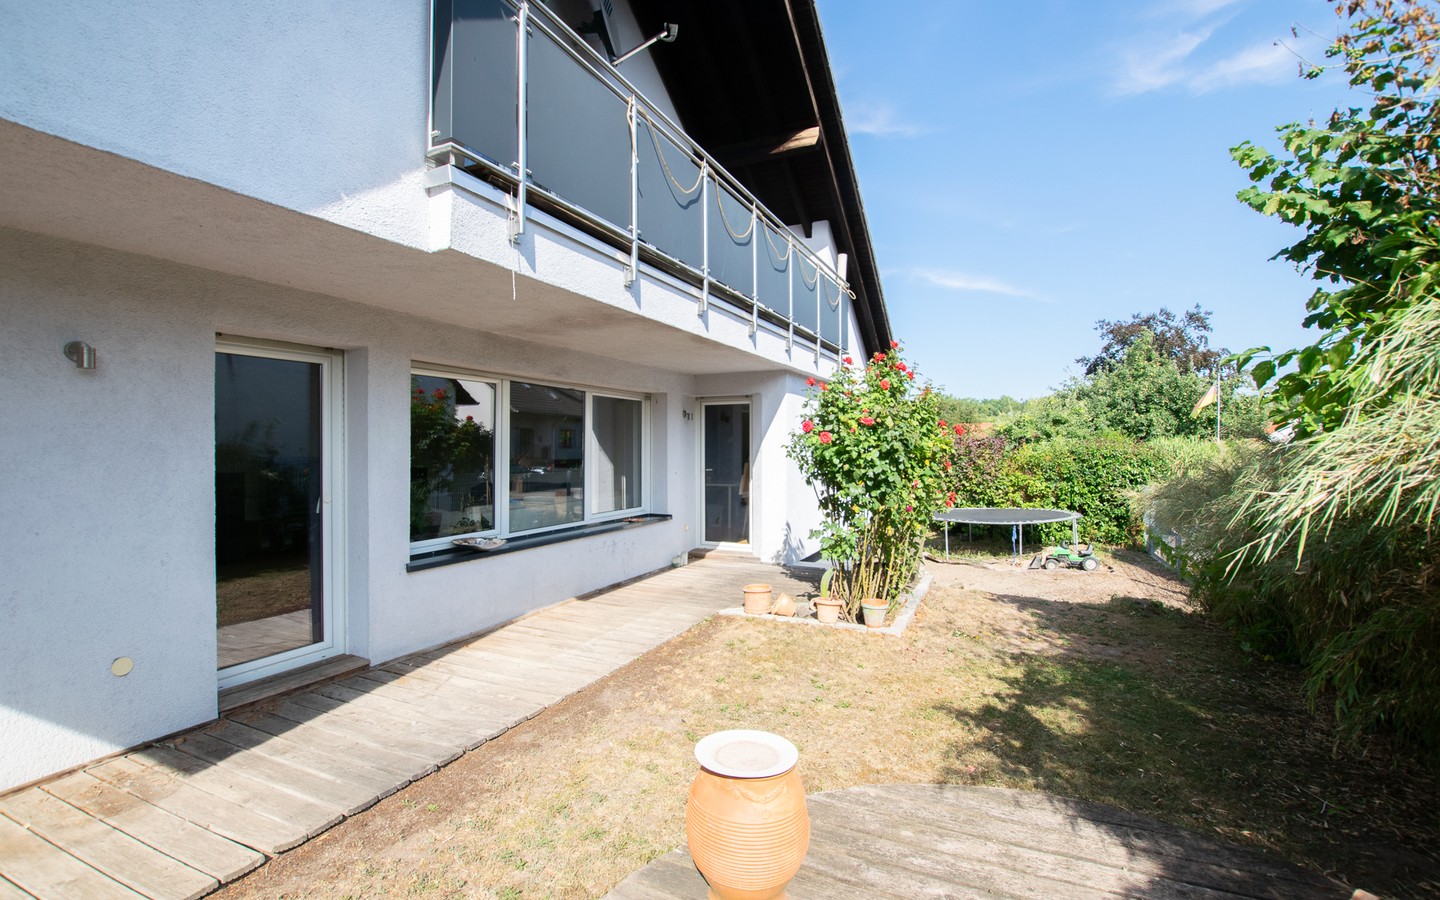 Terrasse - Modernes Einfamilienhaus auf großem Grundstück in ruhiger Lage von Lobenfeld +Virtuelle 3D-Tour+